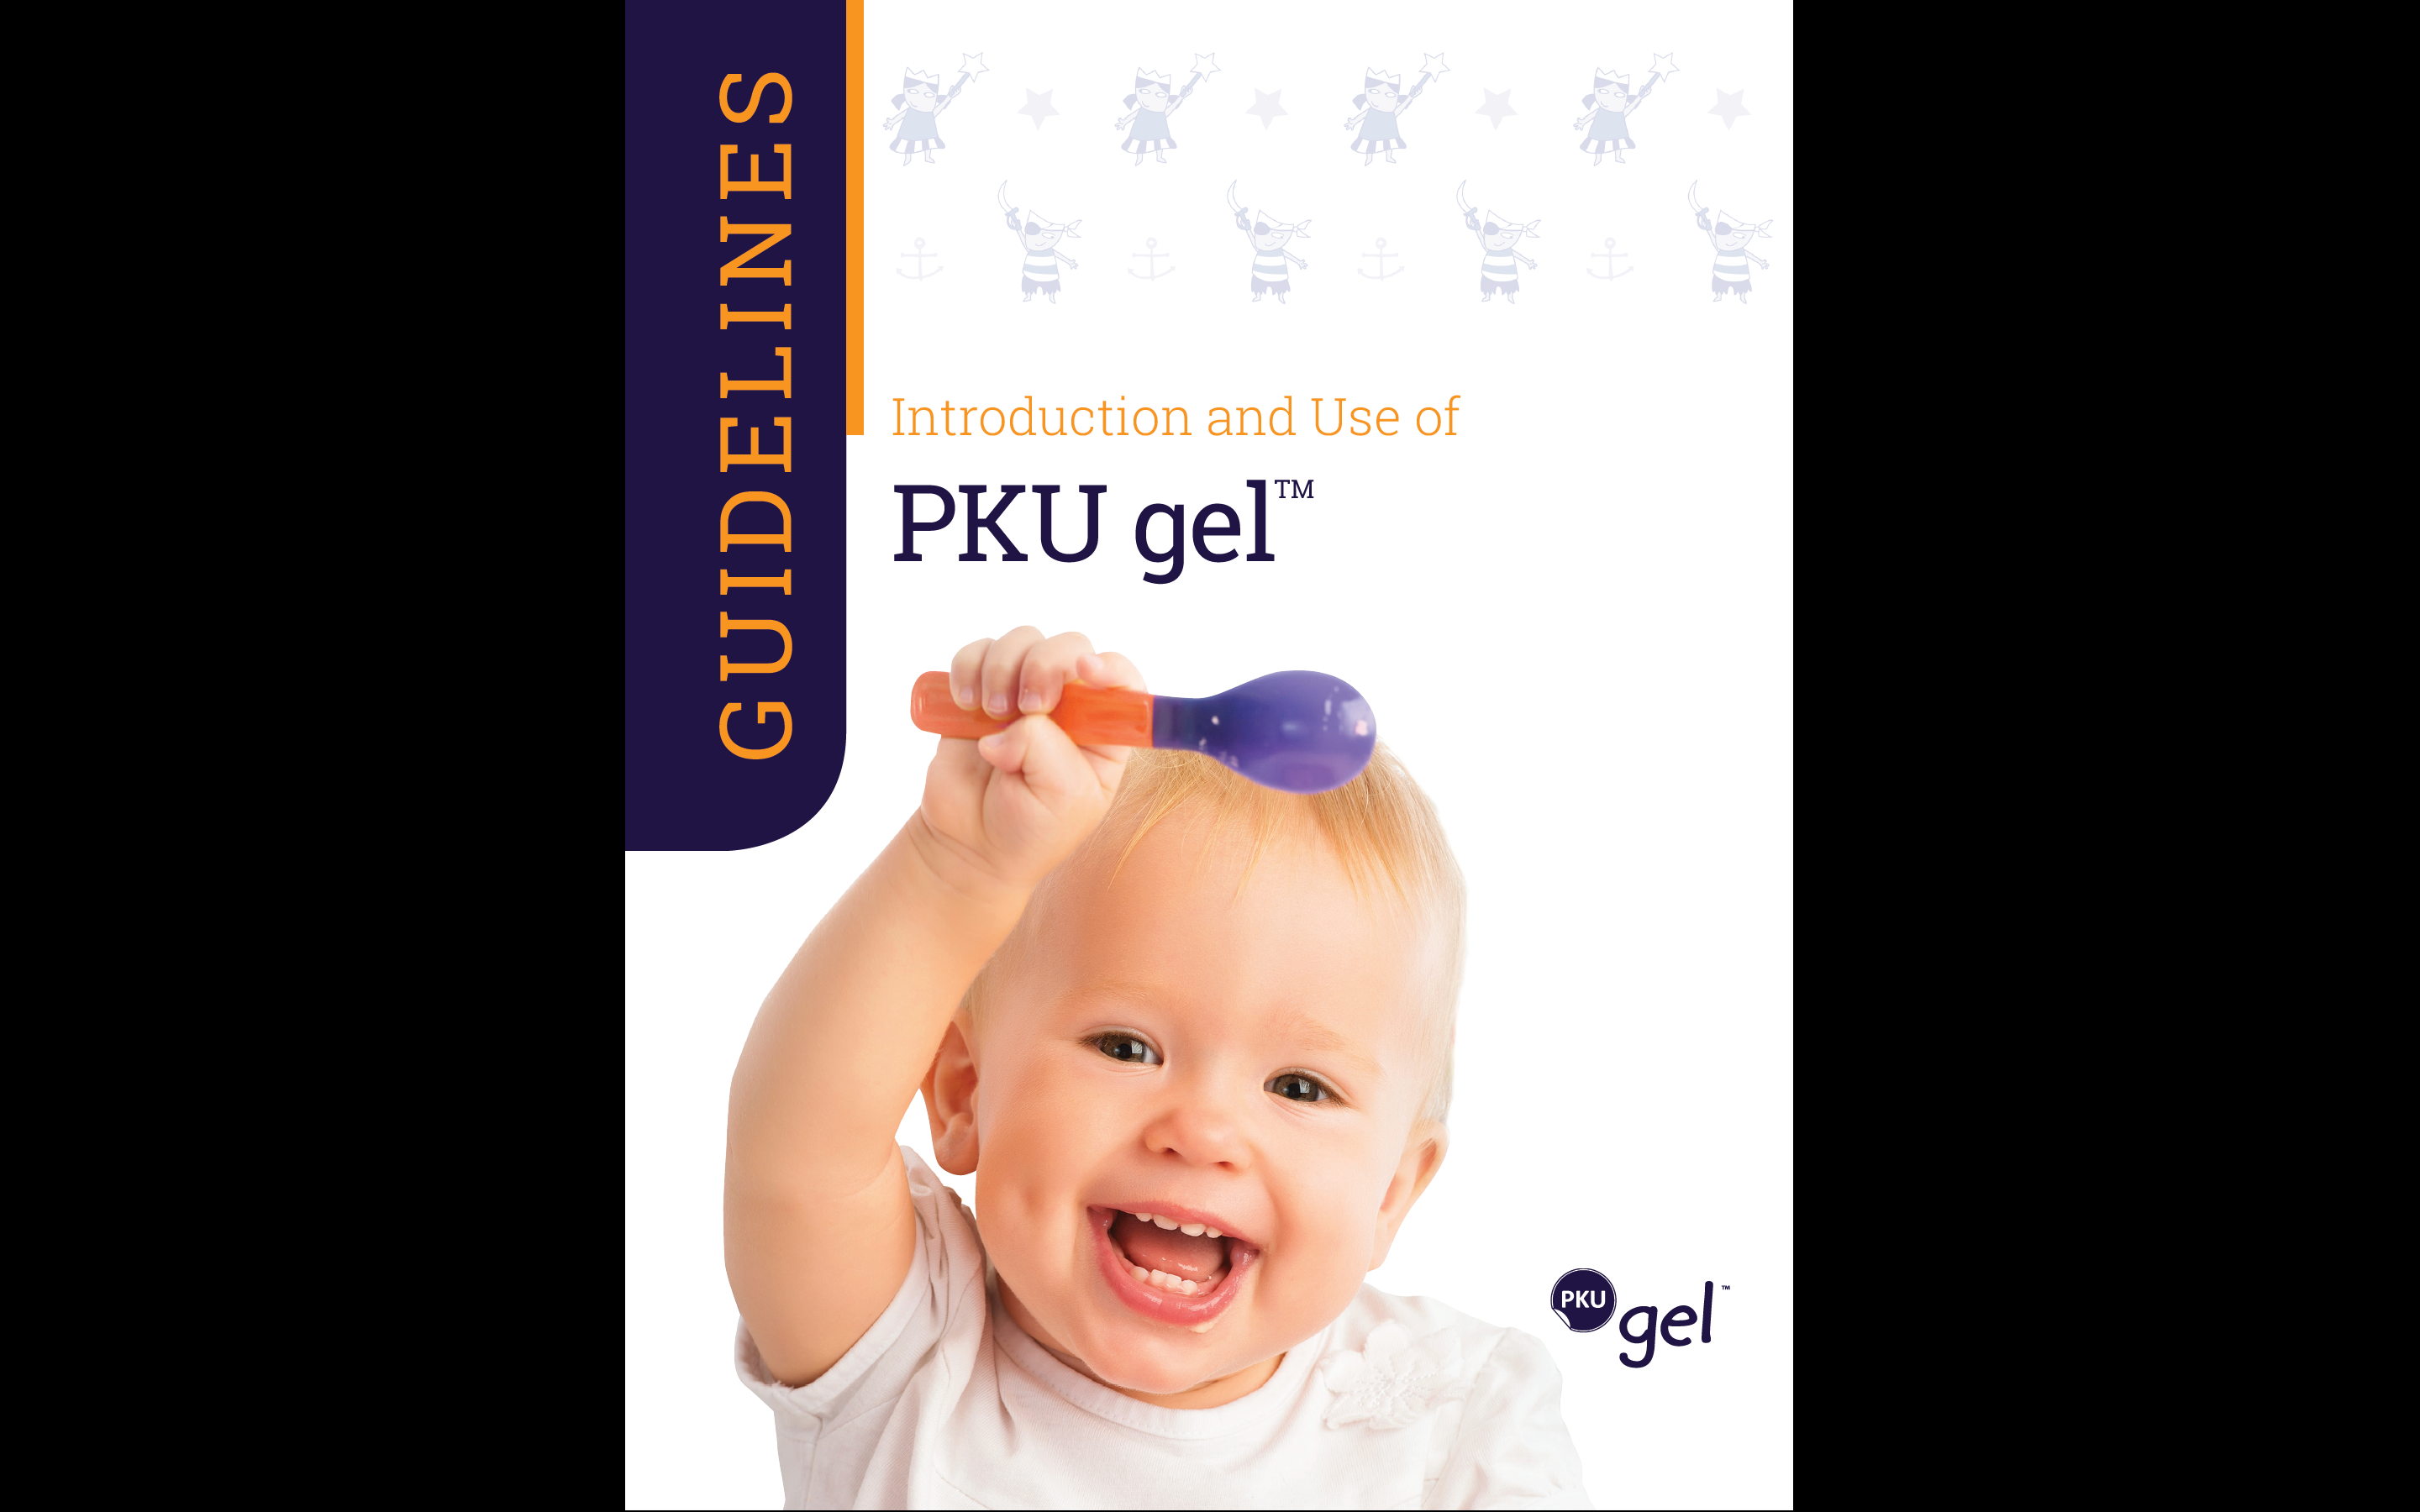 PKU gel Guidelines